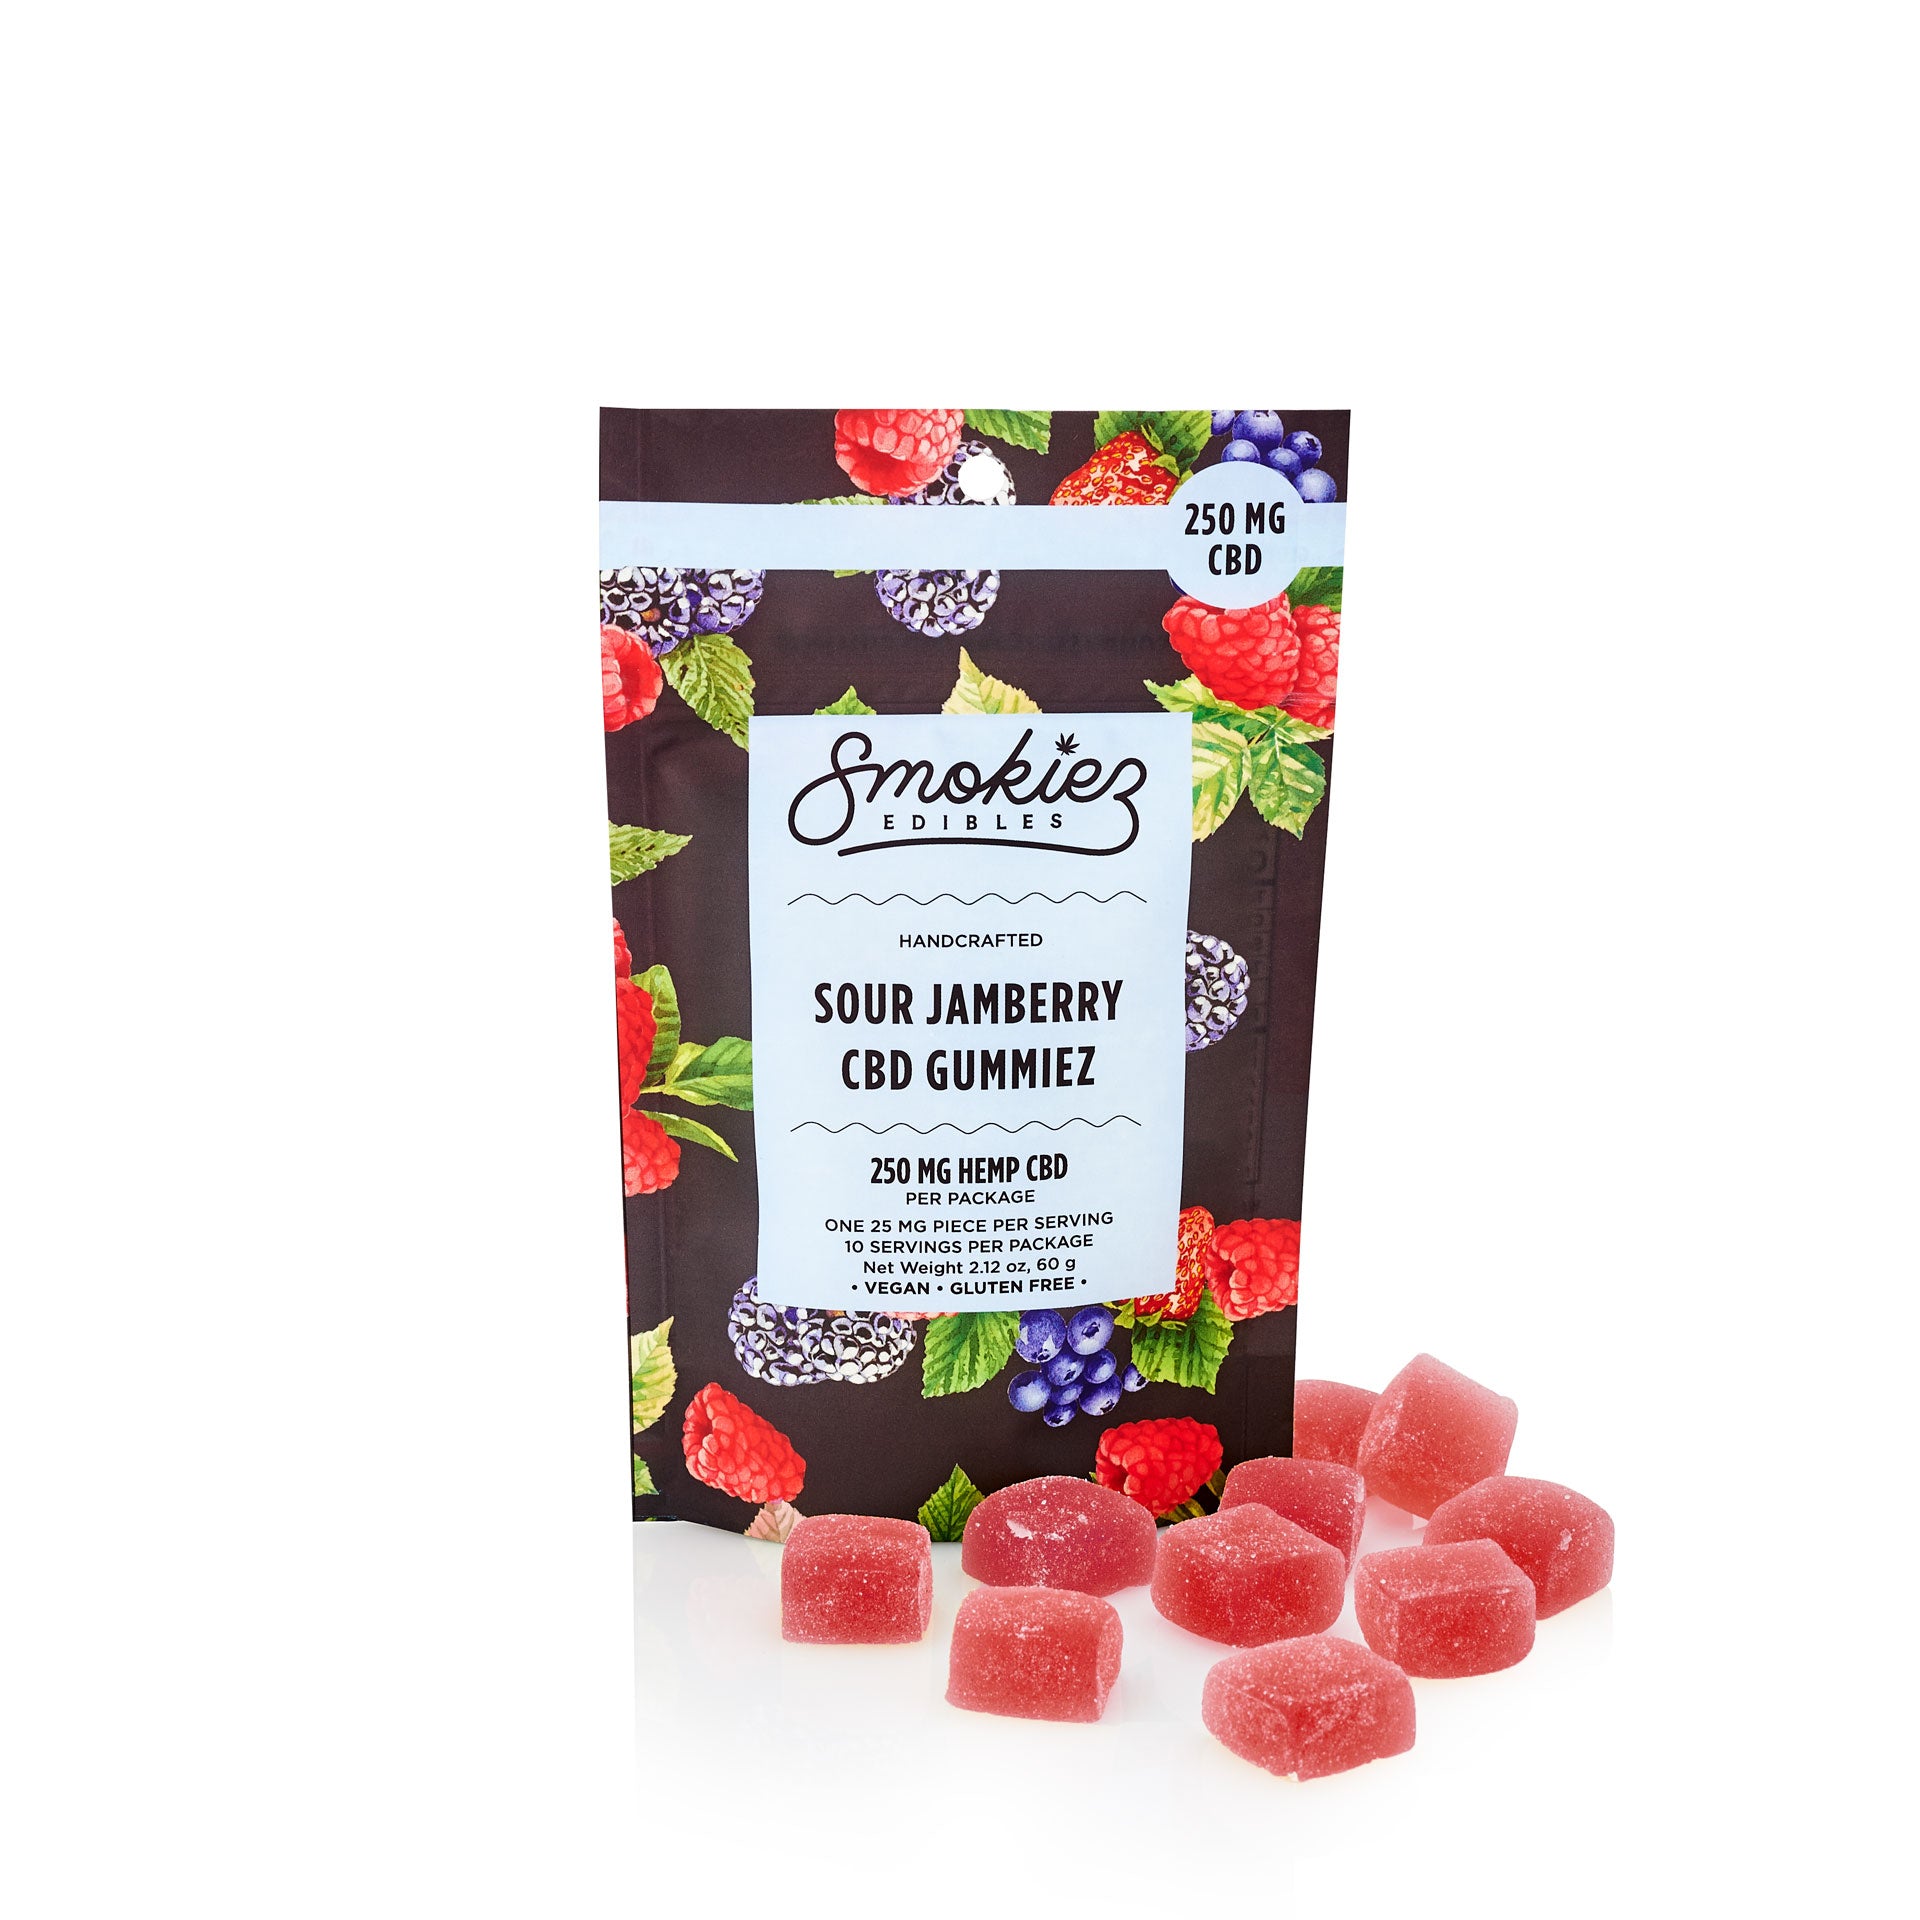 Sour Jamberry 250mg CBD Gummiez